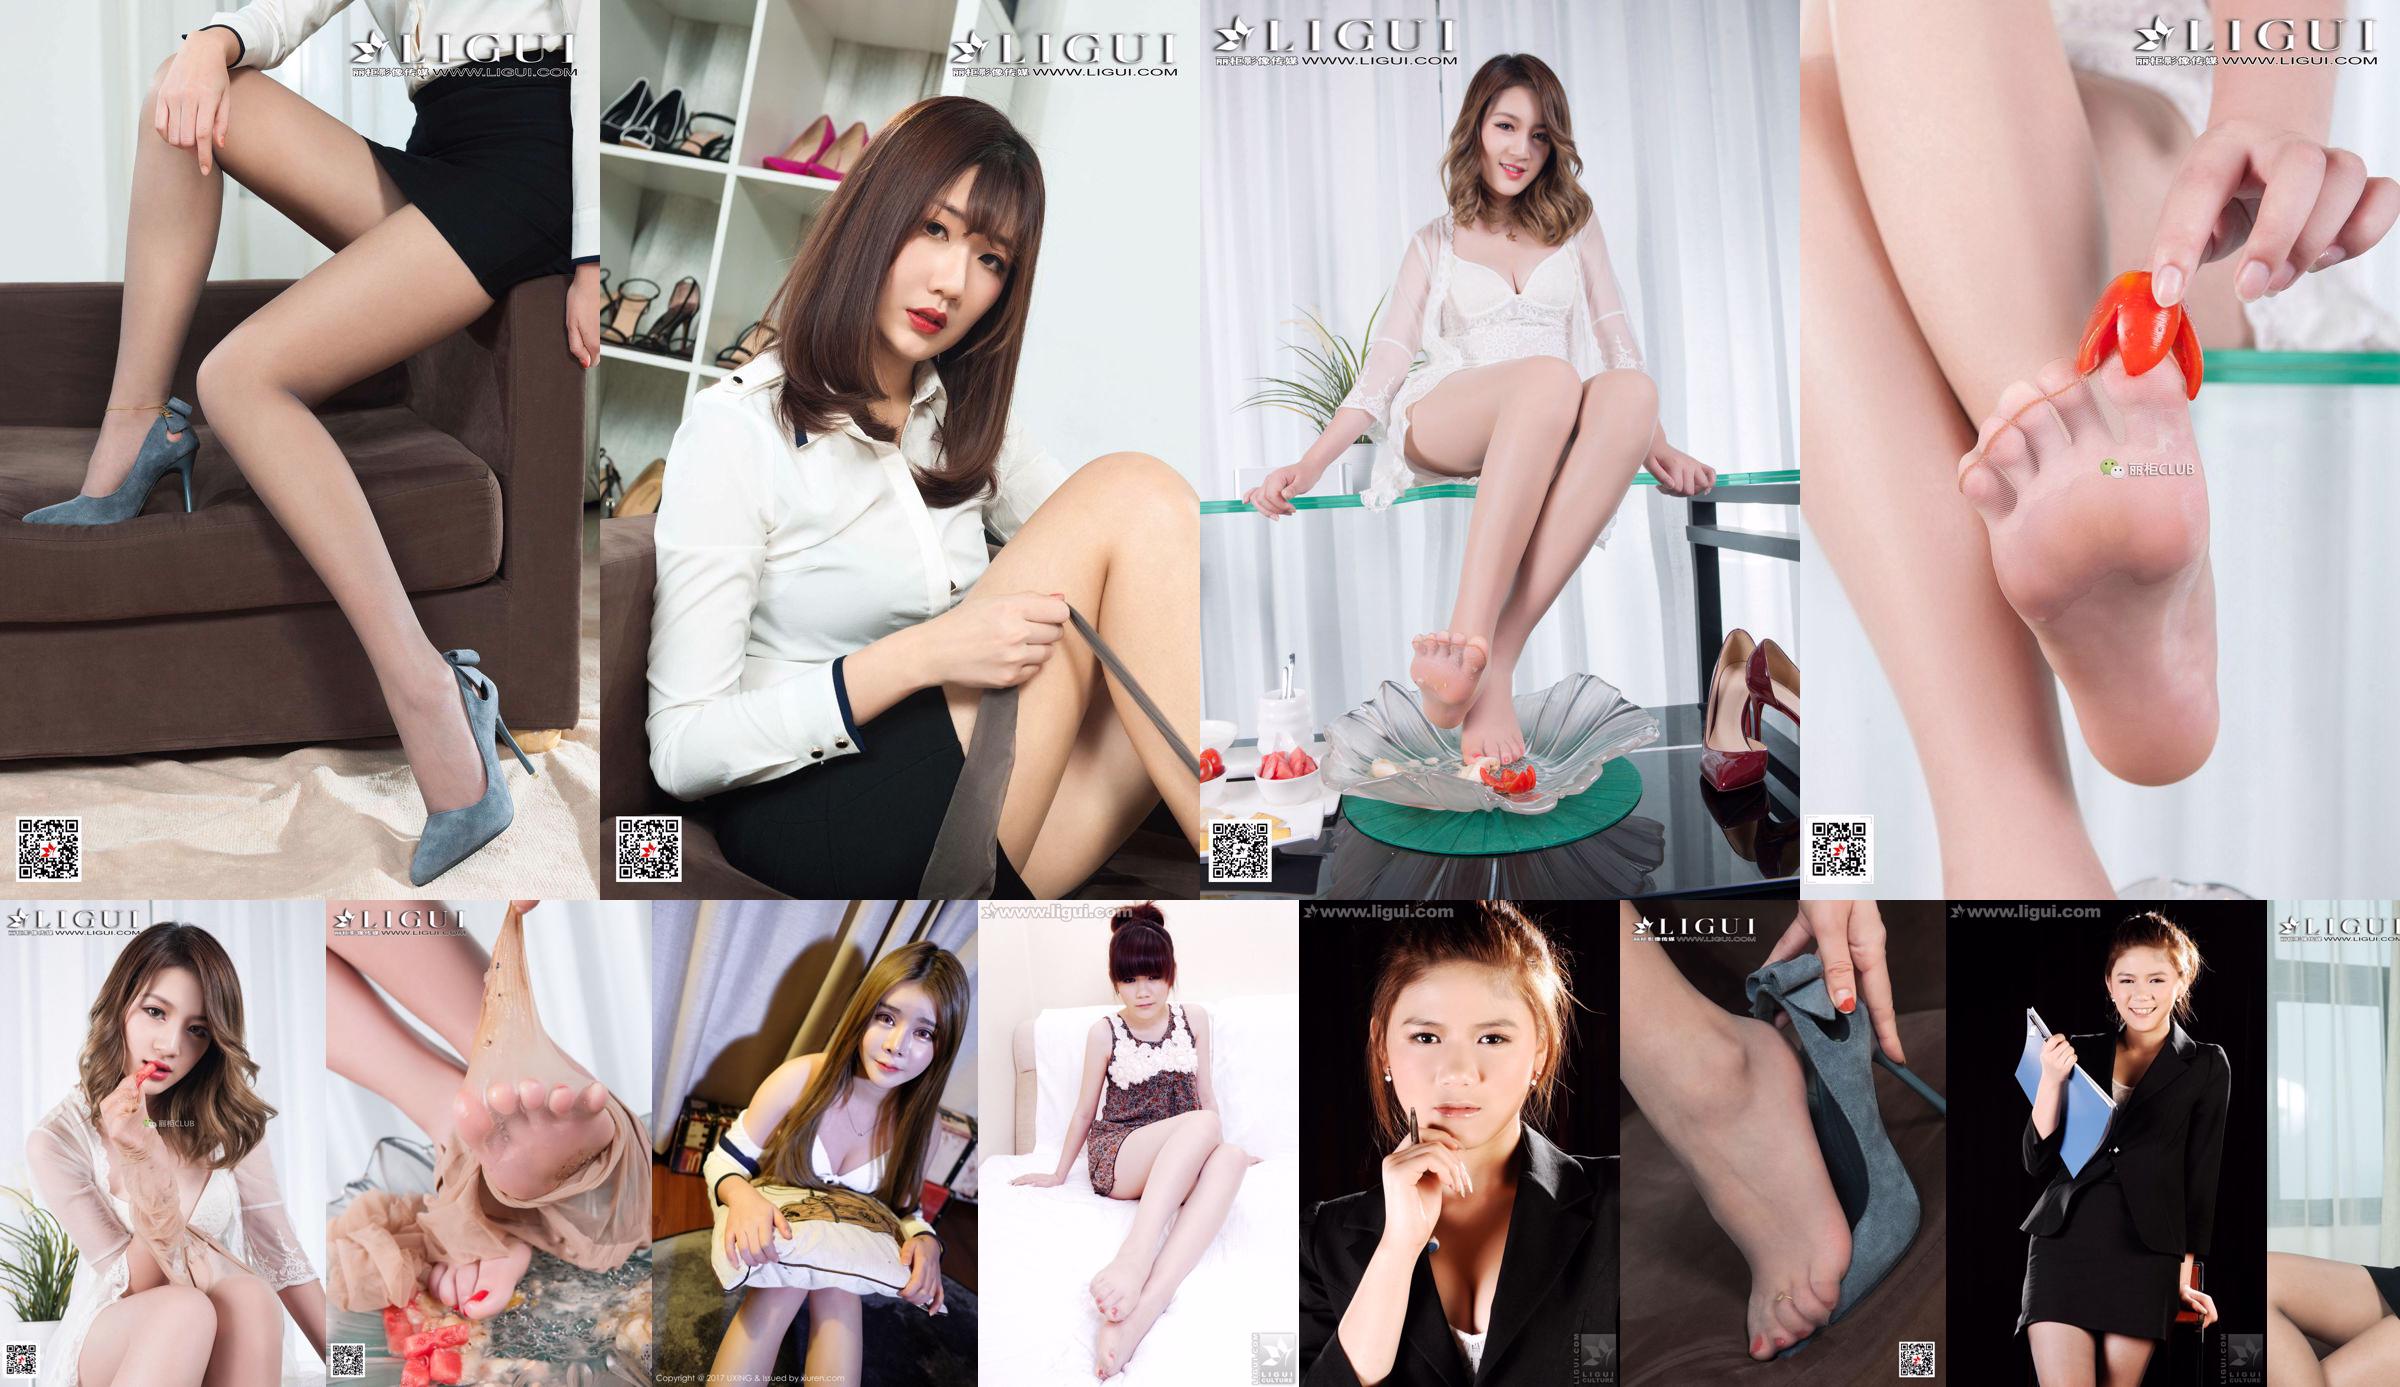 นางแบบ Doudou "The Innocent Show of Pure Girl" [Ligui LiGui] รูปถ่ายขาสวยและเท้าหยก No.2e957d หน้า 1